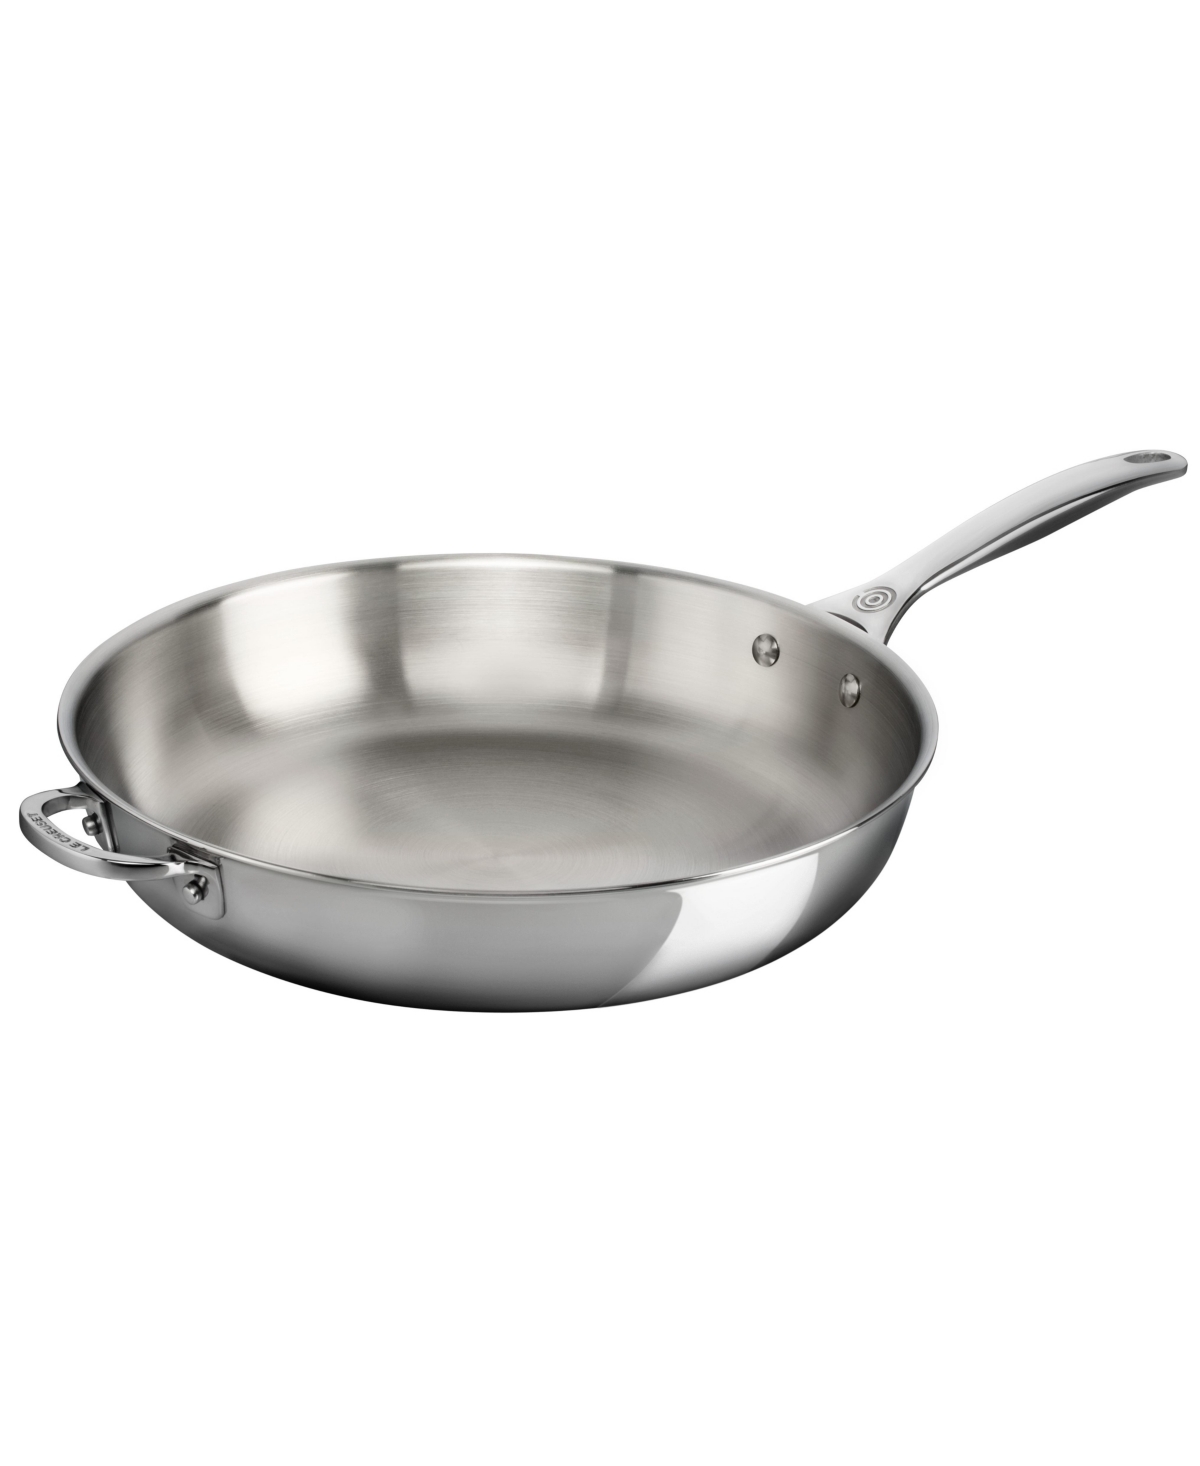 Le Creuset Stainless Steel 12.5" Deep Fry Pan With Helper Handle In N,a